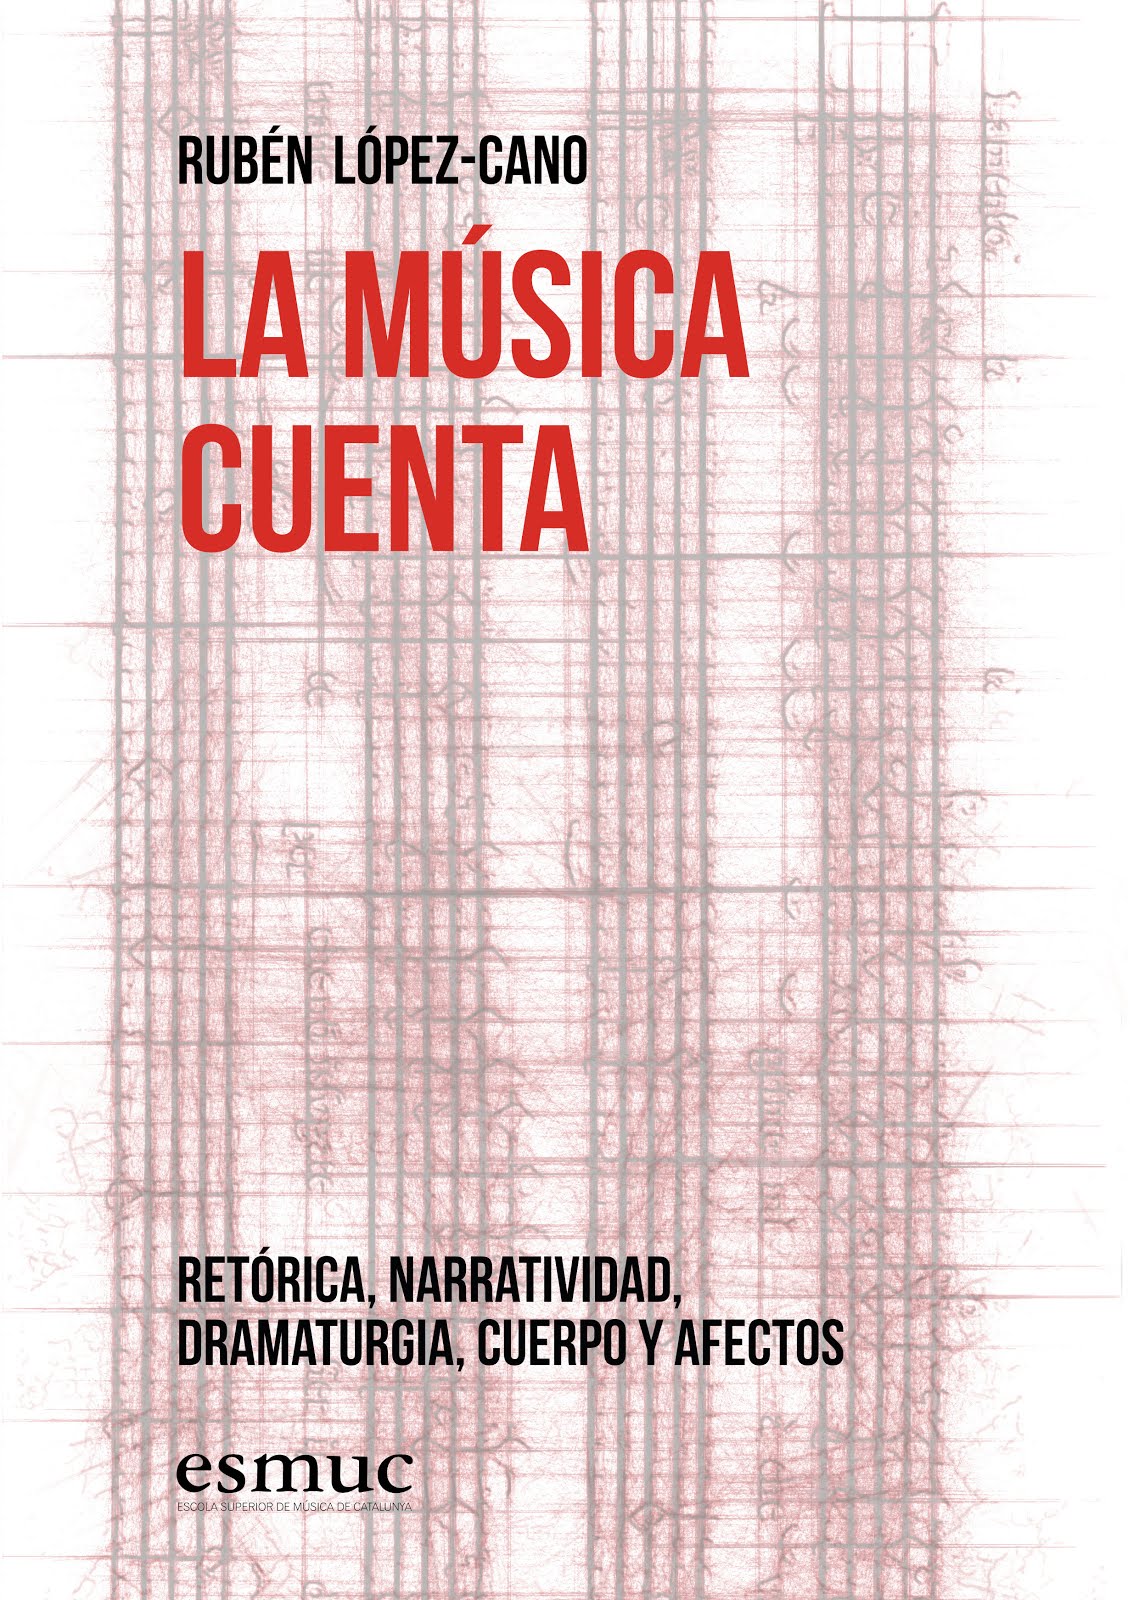 La música cuenta. Rubén López-Cano